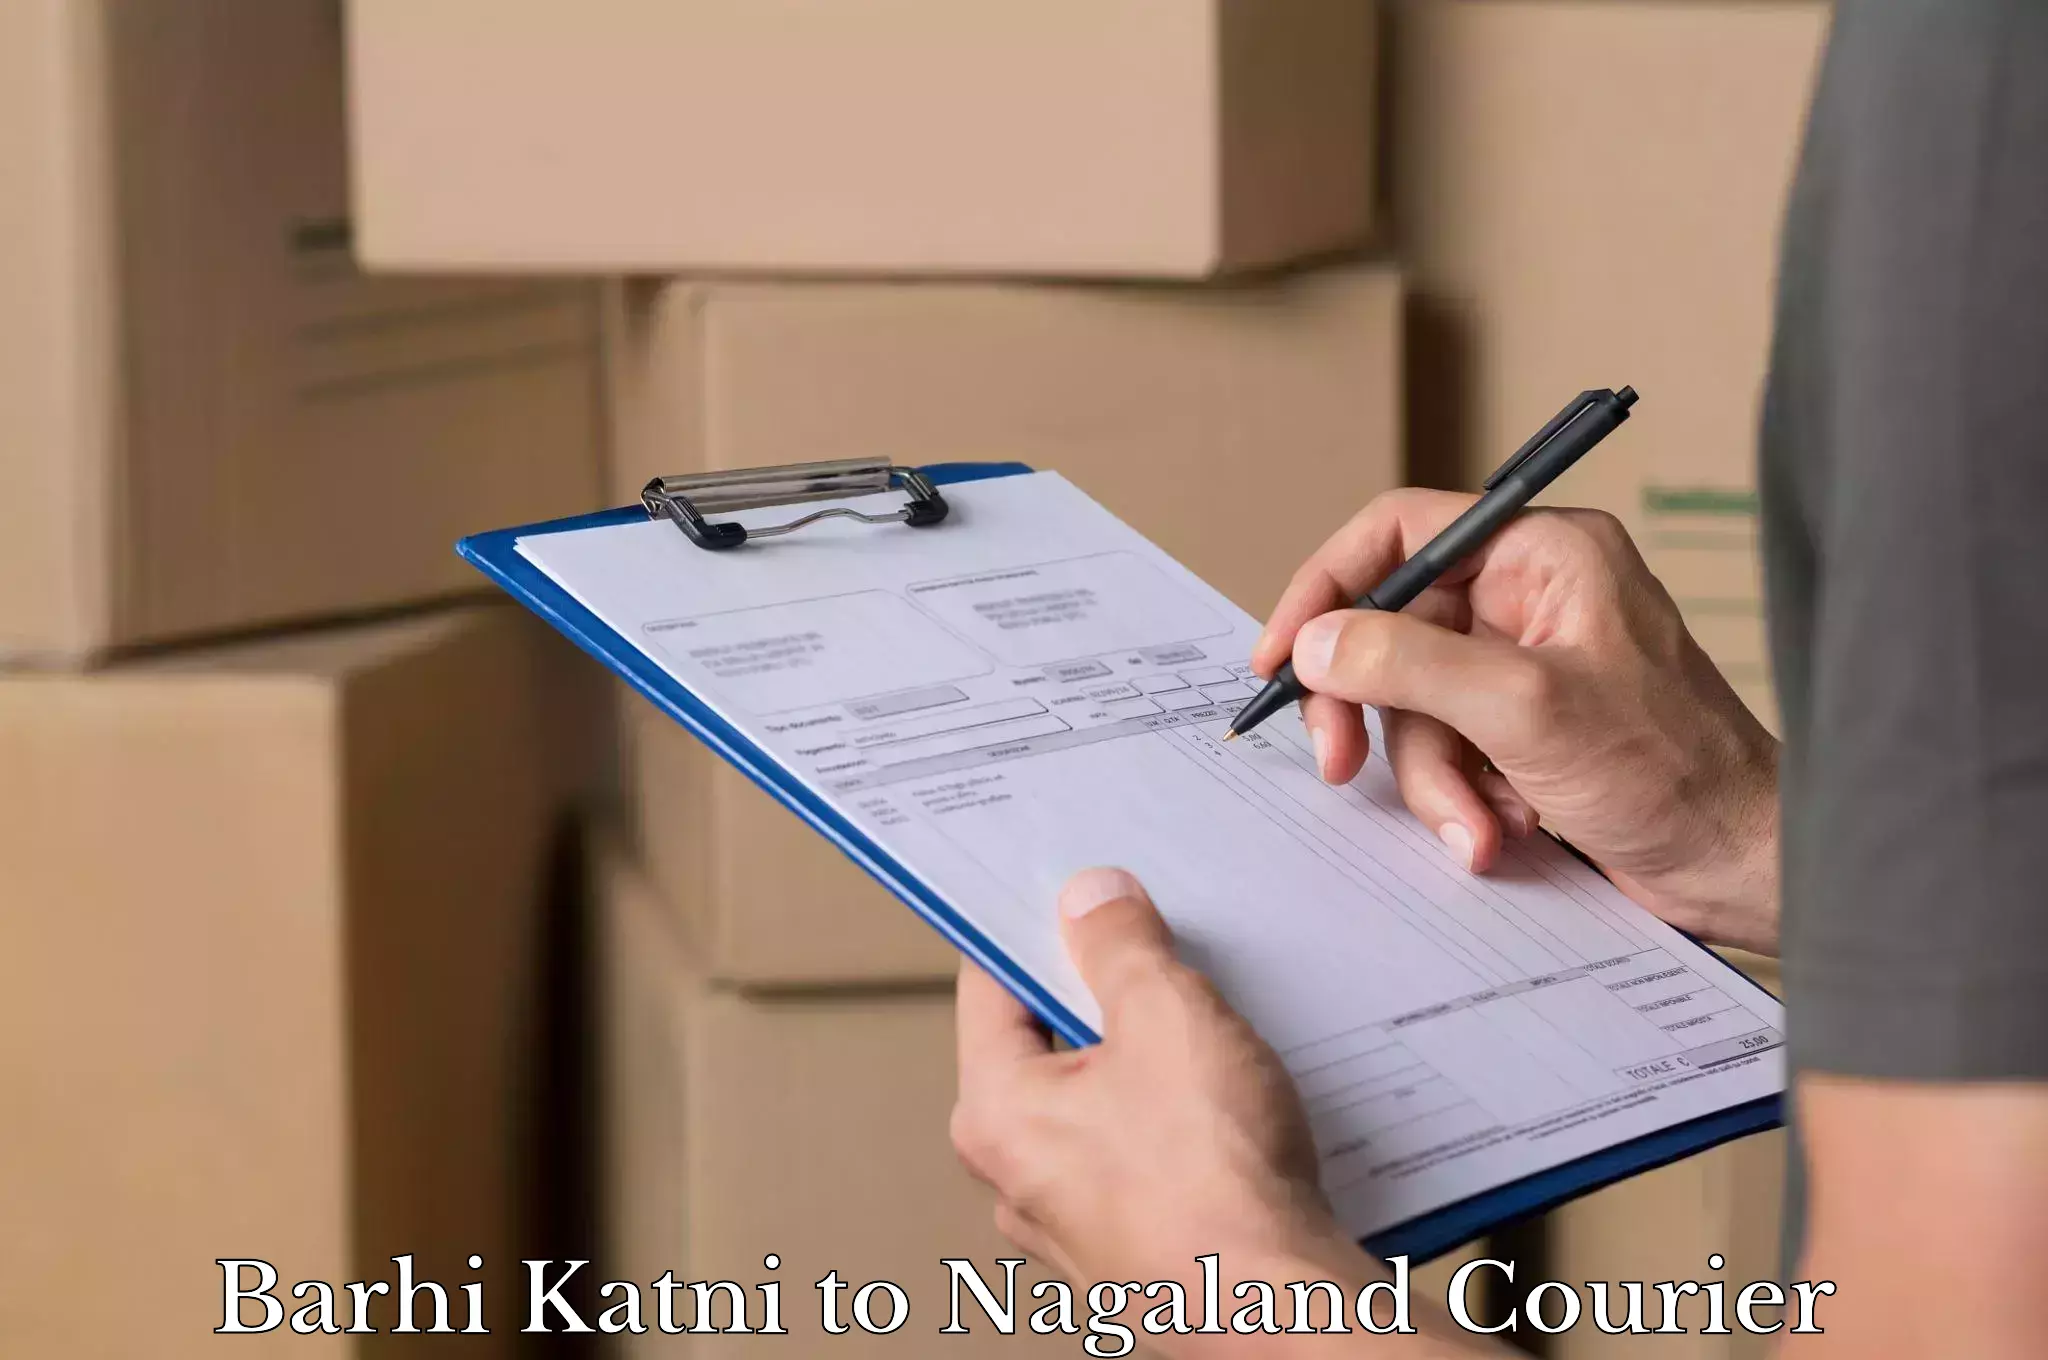 Luggage shipping service Barhi Katni to Nagaland